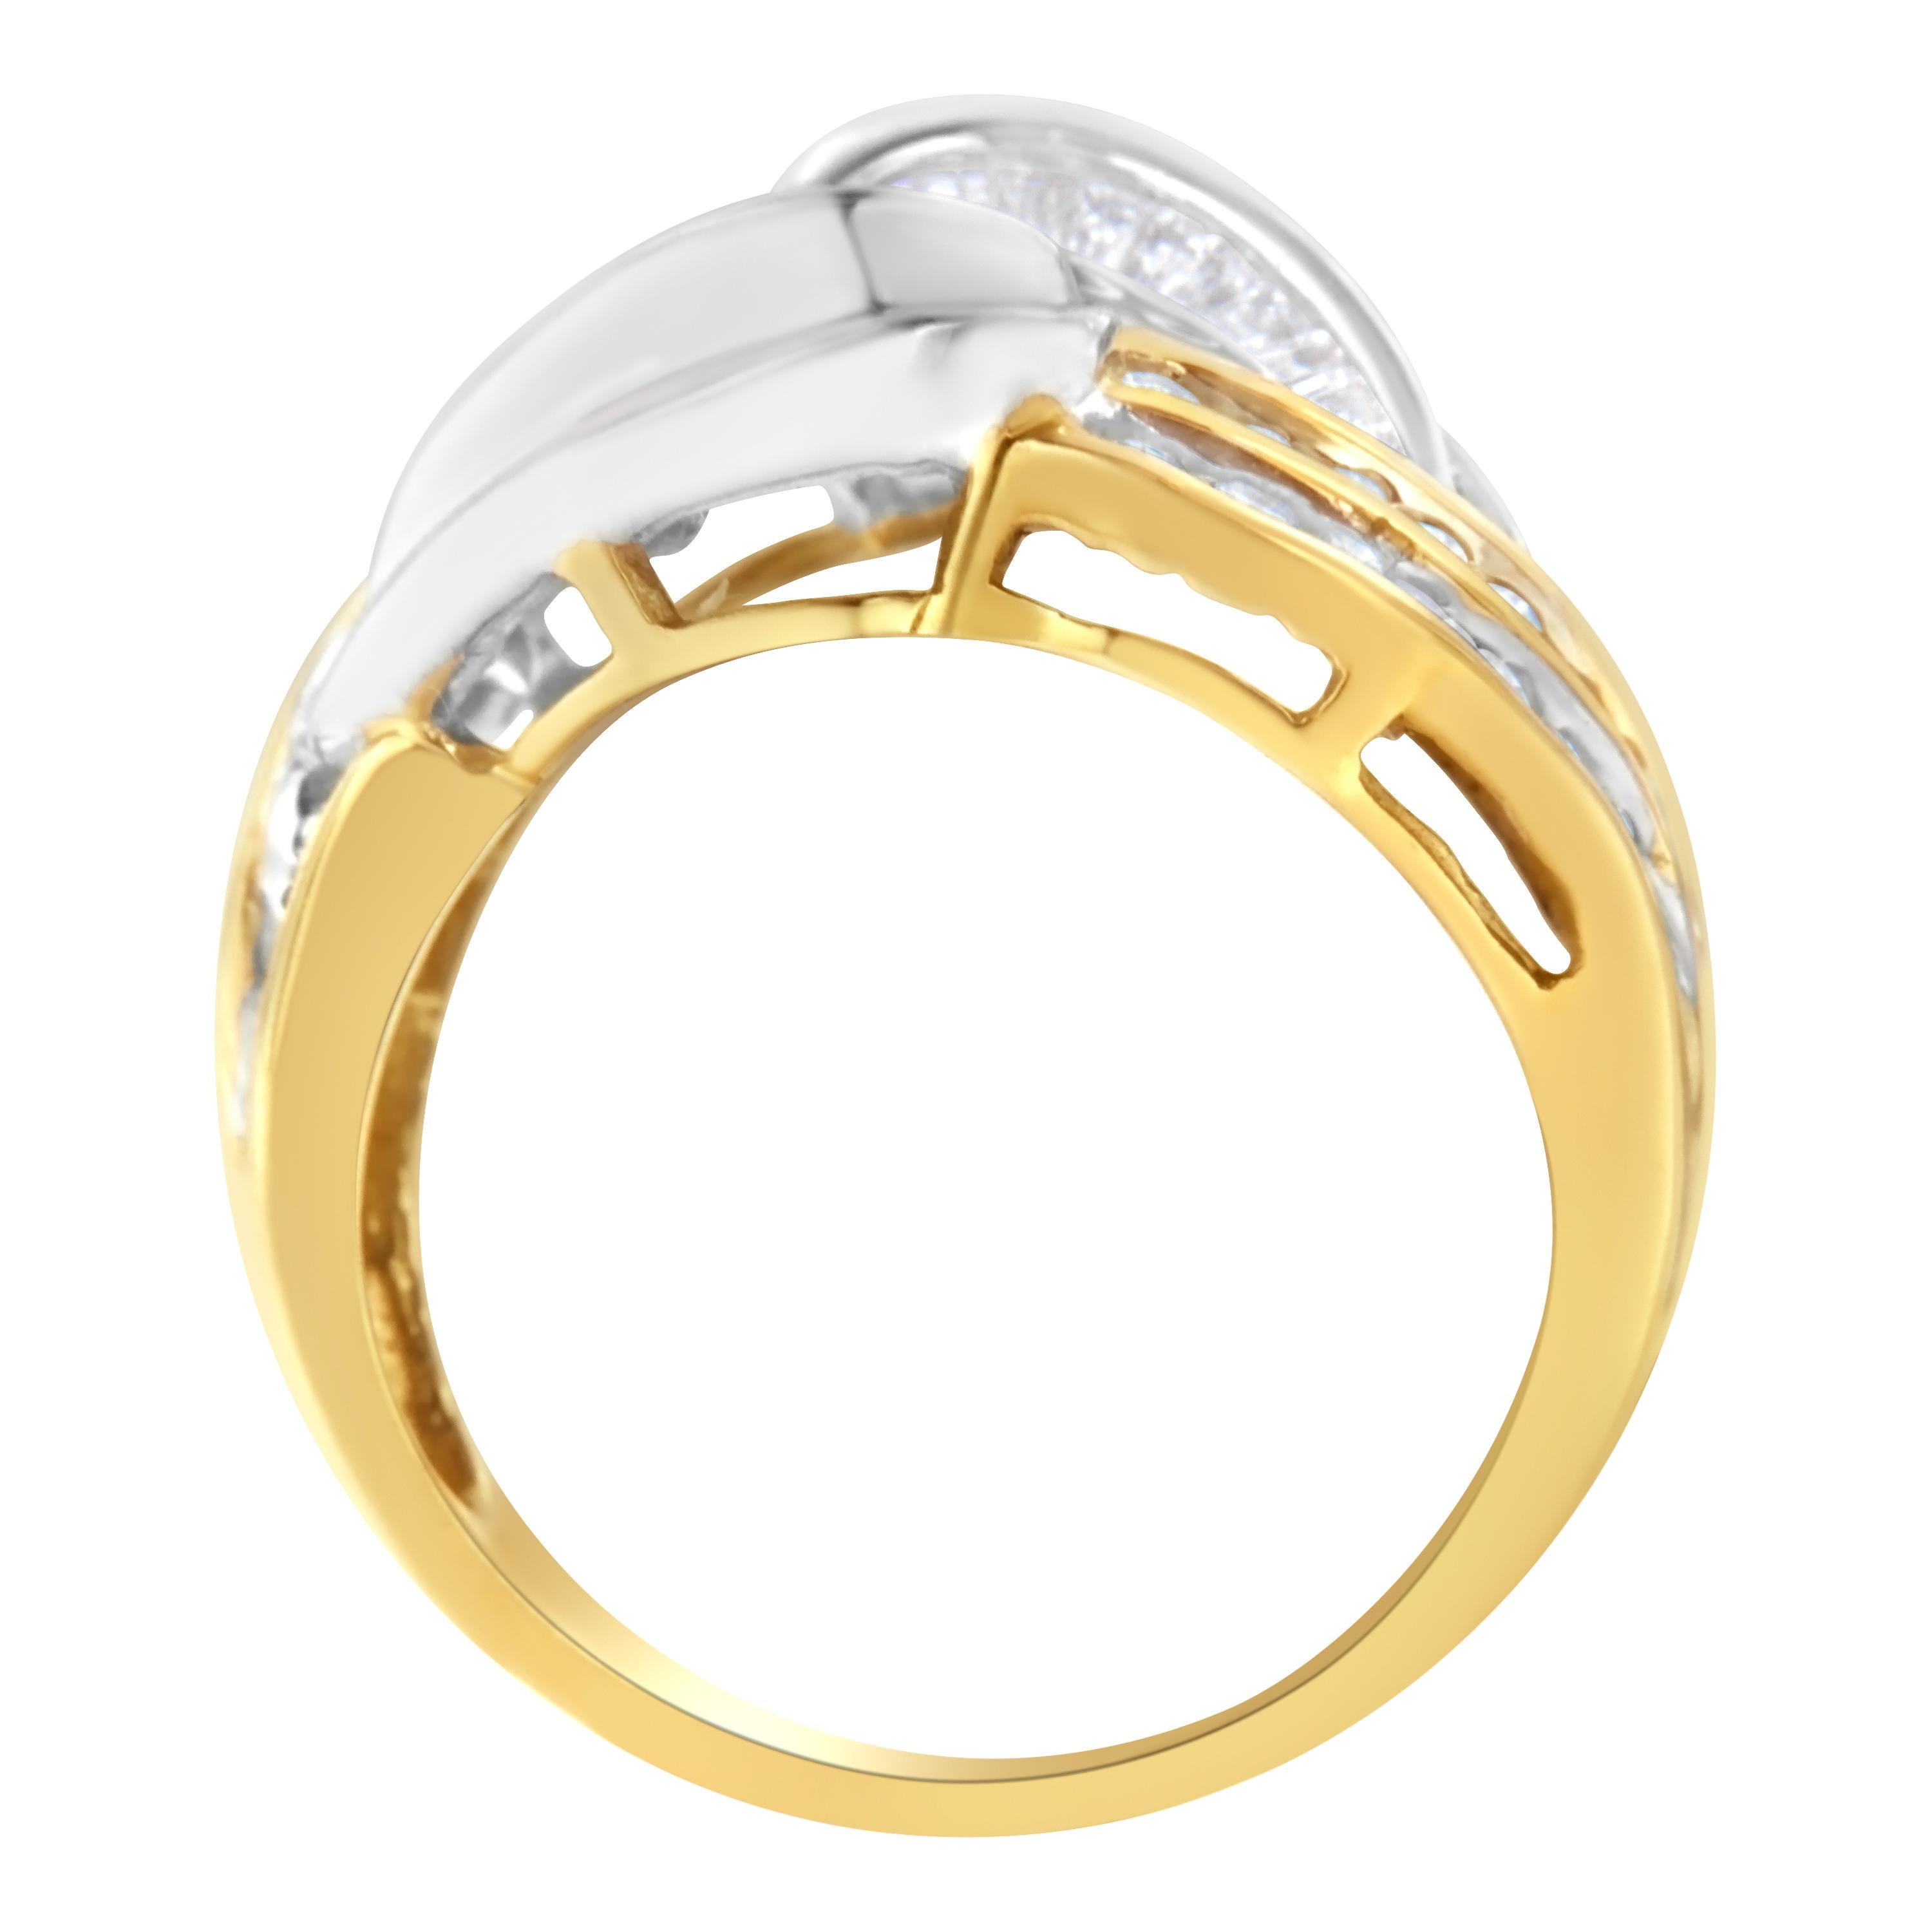 Ein einzigartiger Bypass-Ring aus Gold und Diamanten. Dieser Ring ist mit 31 runden und 52 Baguetteschliff-Diamanten in einer Kanalfassung besetzt. Die Diamanten mit einem Gesamtgewicht von 1 Karat sind in feinstem zweifarbigem 10-karätigem Gold